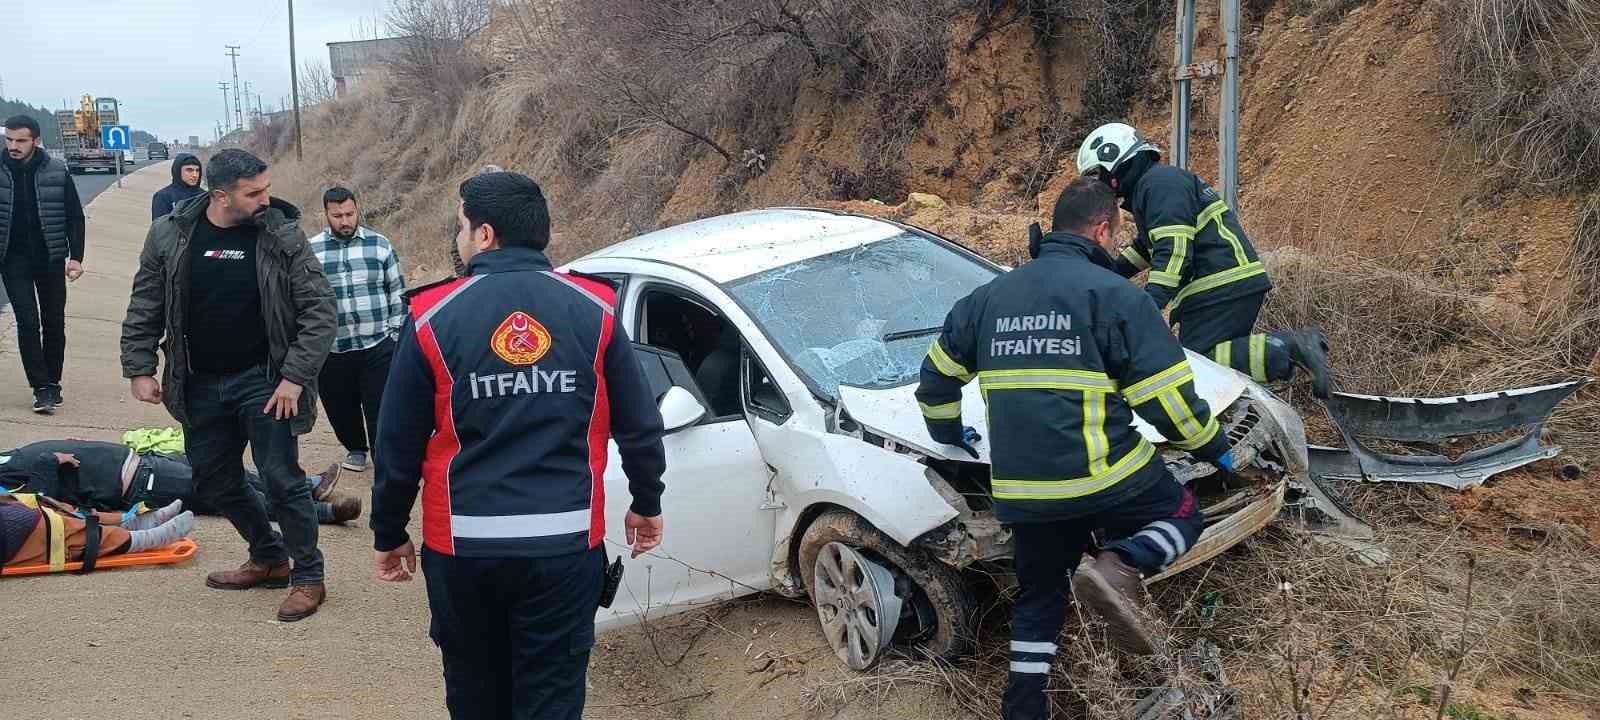 Mardin’de meydana gelen trafik kazasında otomobil şarampole yuvarlandı: Biri çocuk olmak üzere 4 kişi yaralandı